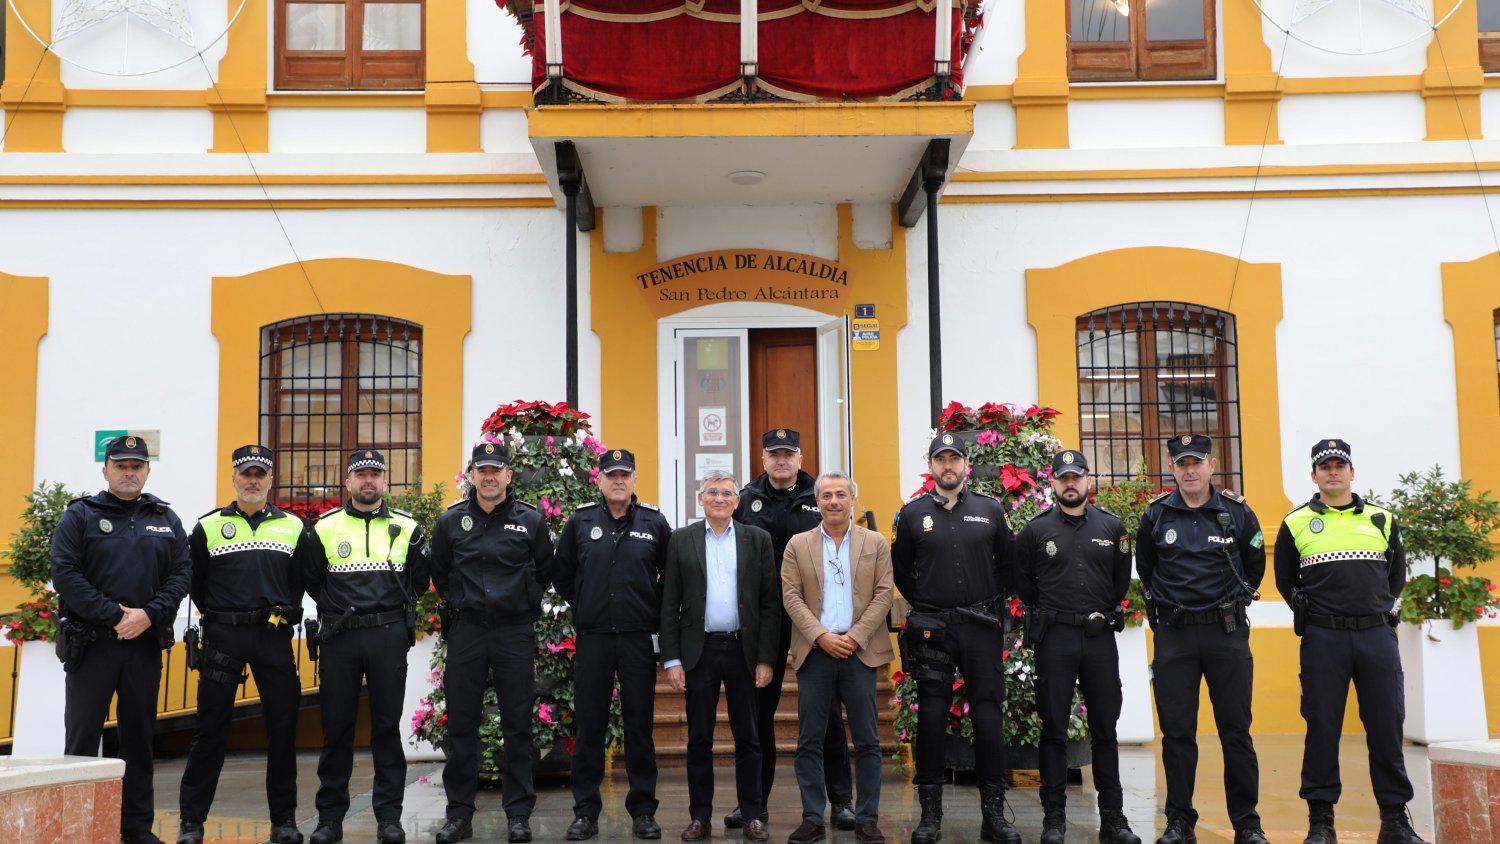 La Policía Local refuerza su estructura en San Pedro Alcántara con dos subinspectores y tres oficiales